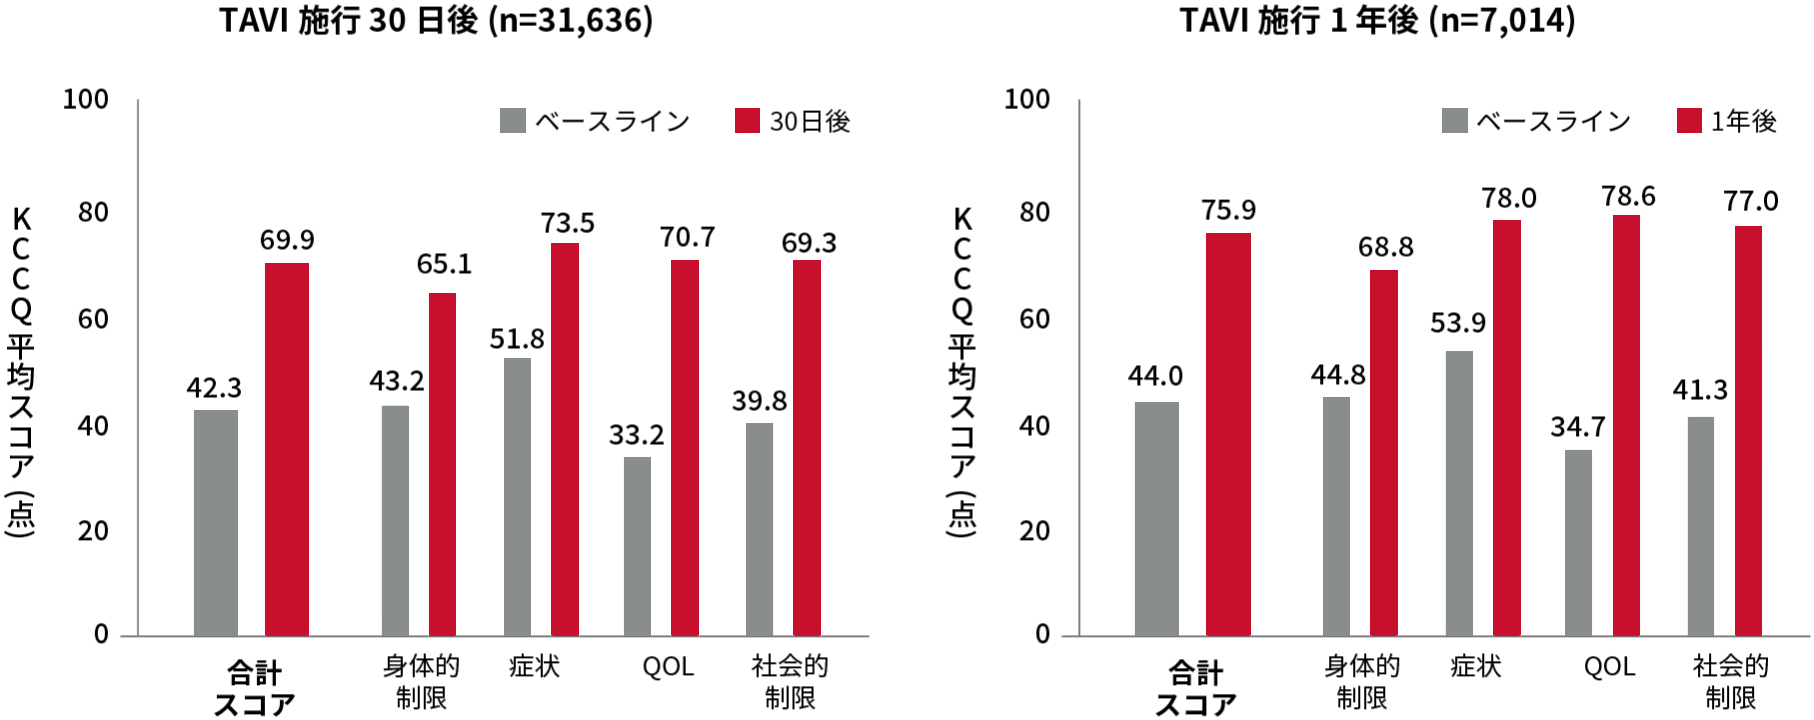 カテーテル治療（TAVI）によるQOL改善効果（STS/ACC TVT registry)の結果。